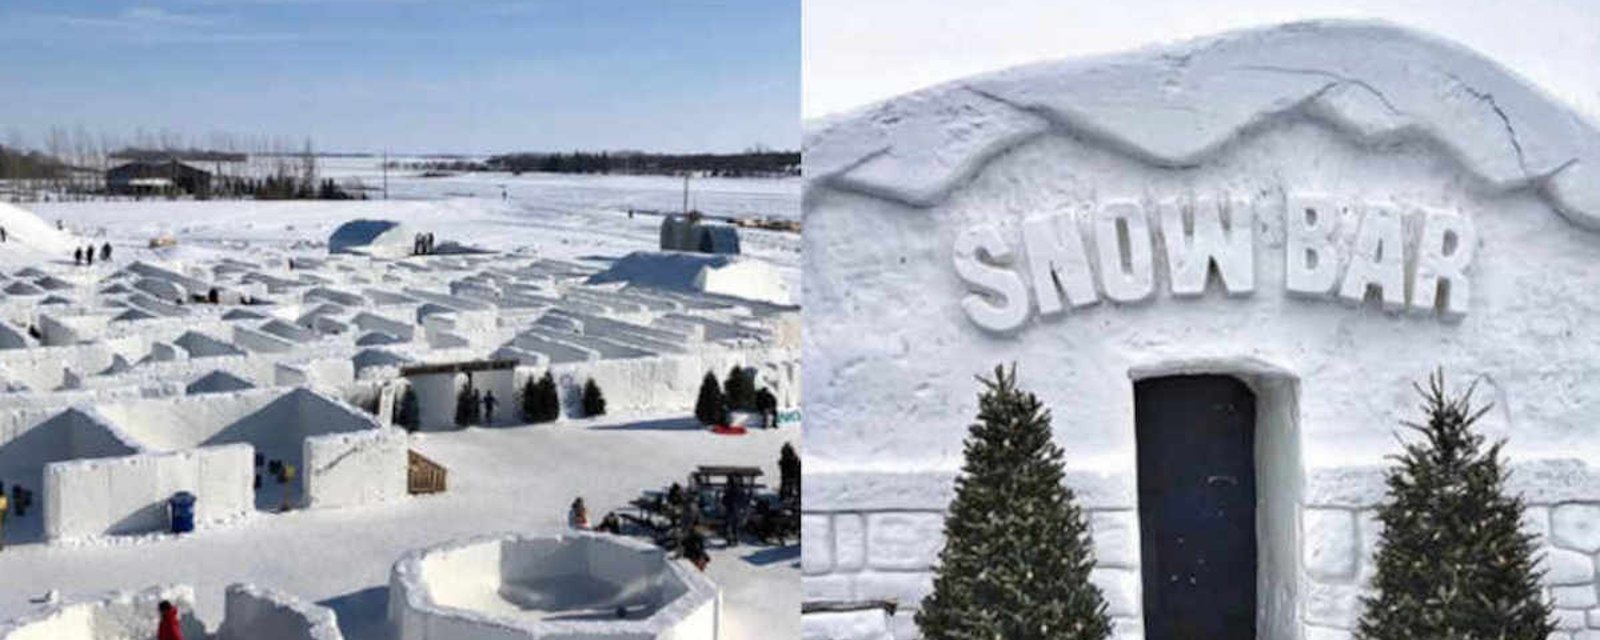 Le plus grand labyrinthe de neige au monde se trouve au Canada